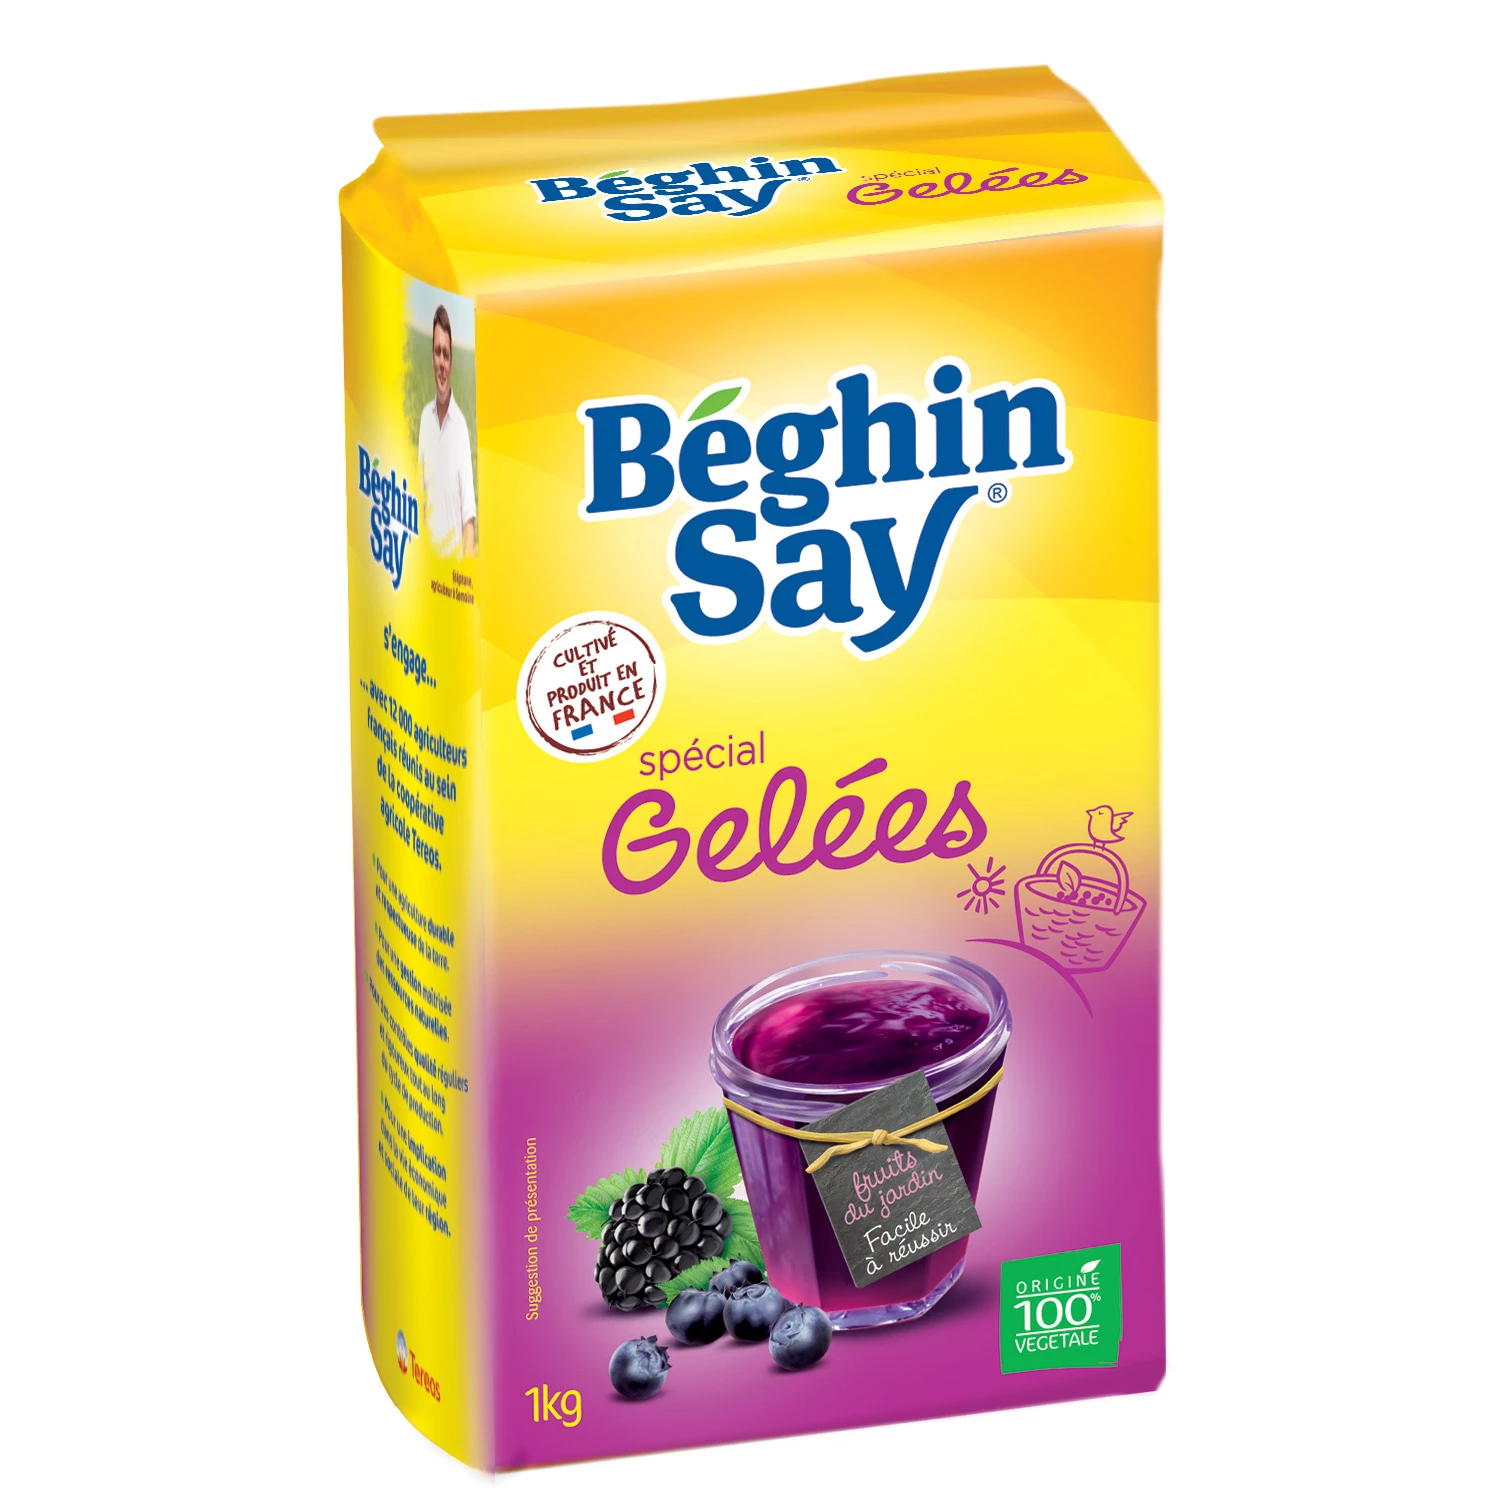 Special Jelly Gelling Sugar 1Kg - BEGHIN SAY